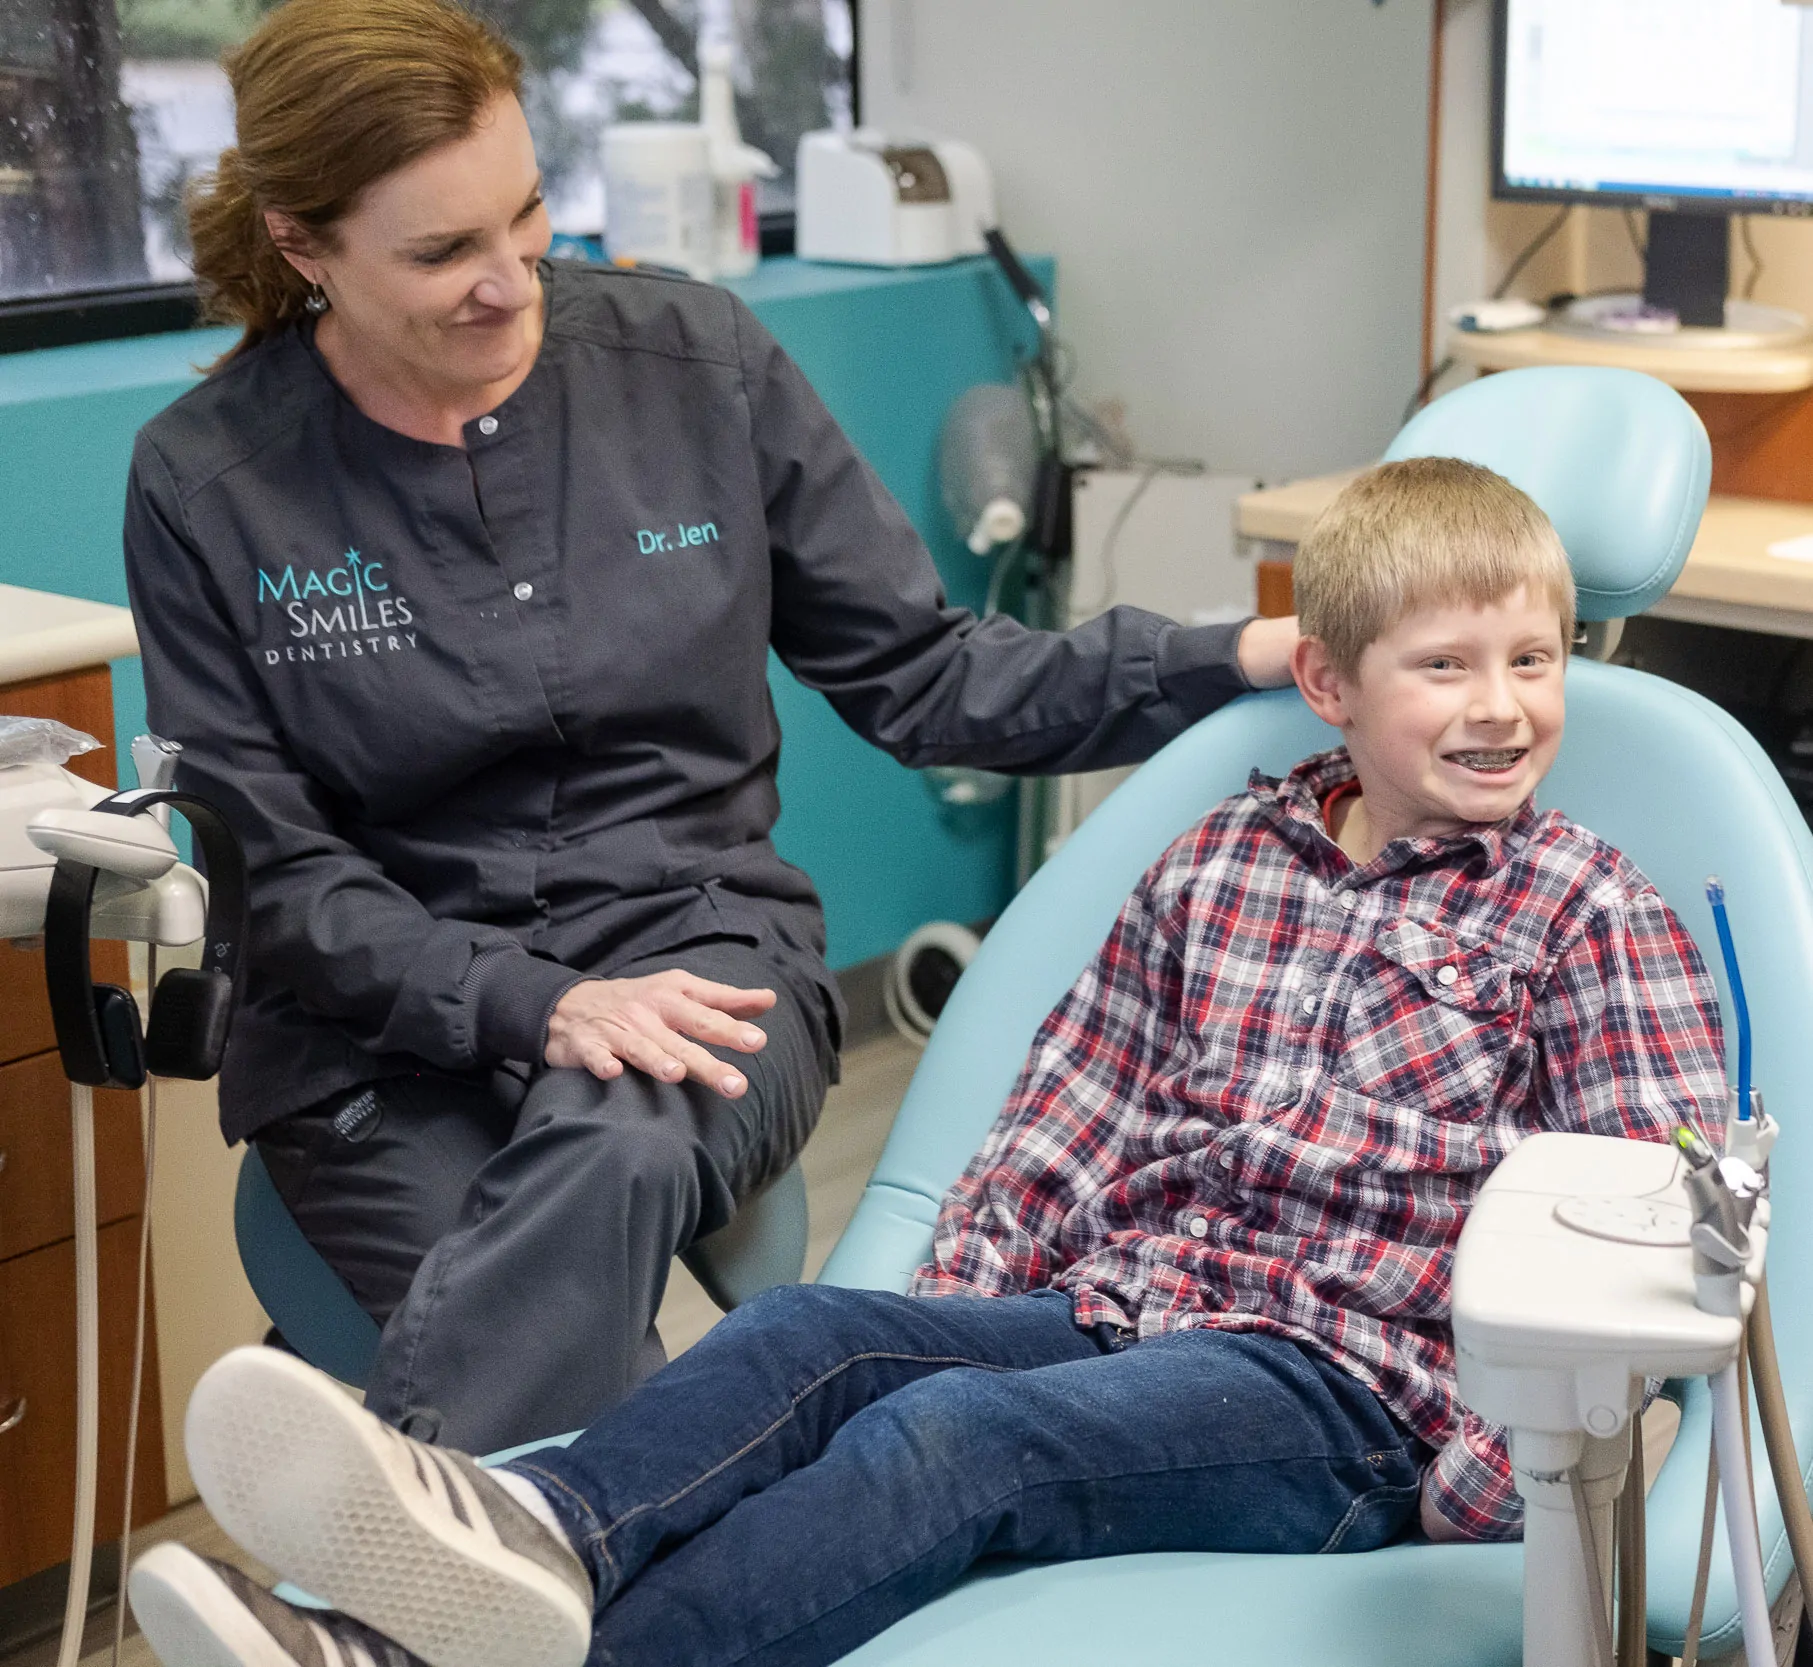 Patients Magic Smiles Dentistry 2019 El Dorado Hills California Dentist 87 1 - Why Are Baby Teeth So Important?